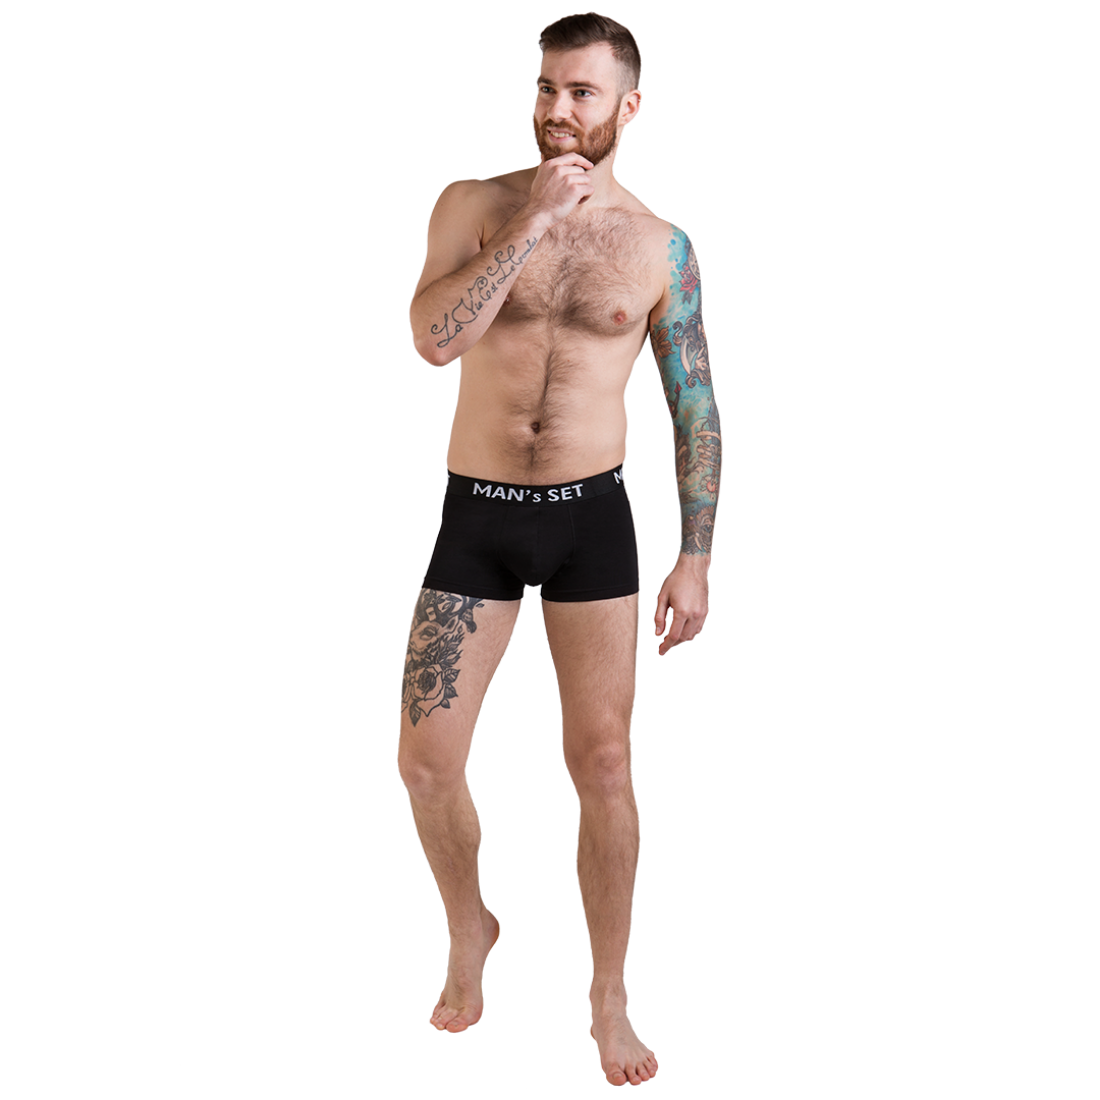 Мужские анатомические боксеры, Intimate 2.0 Black Series, графитовый MansSet - Фото 2